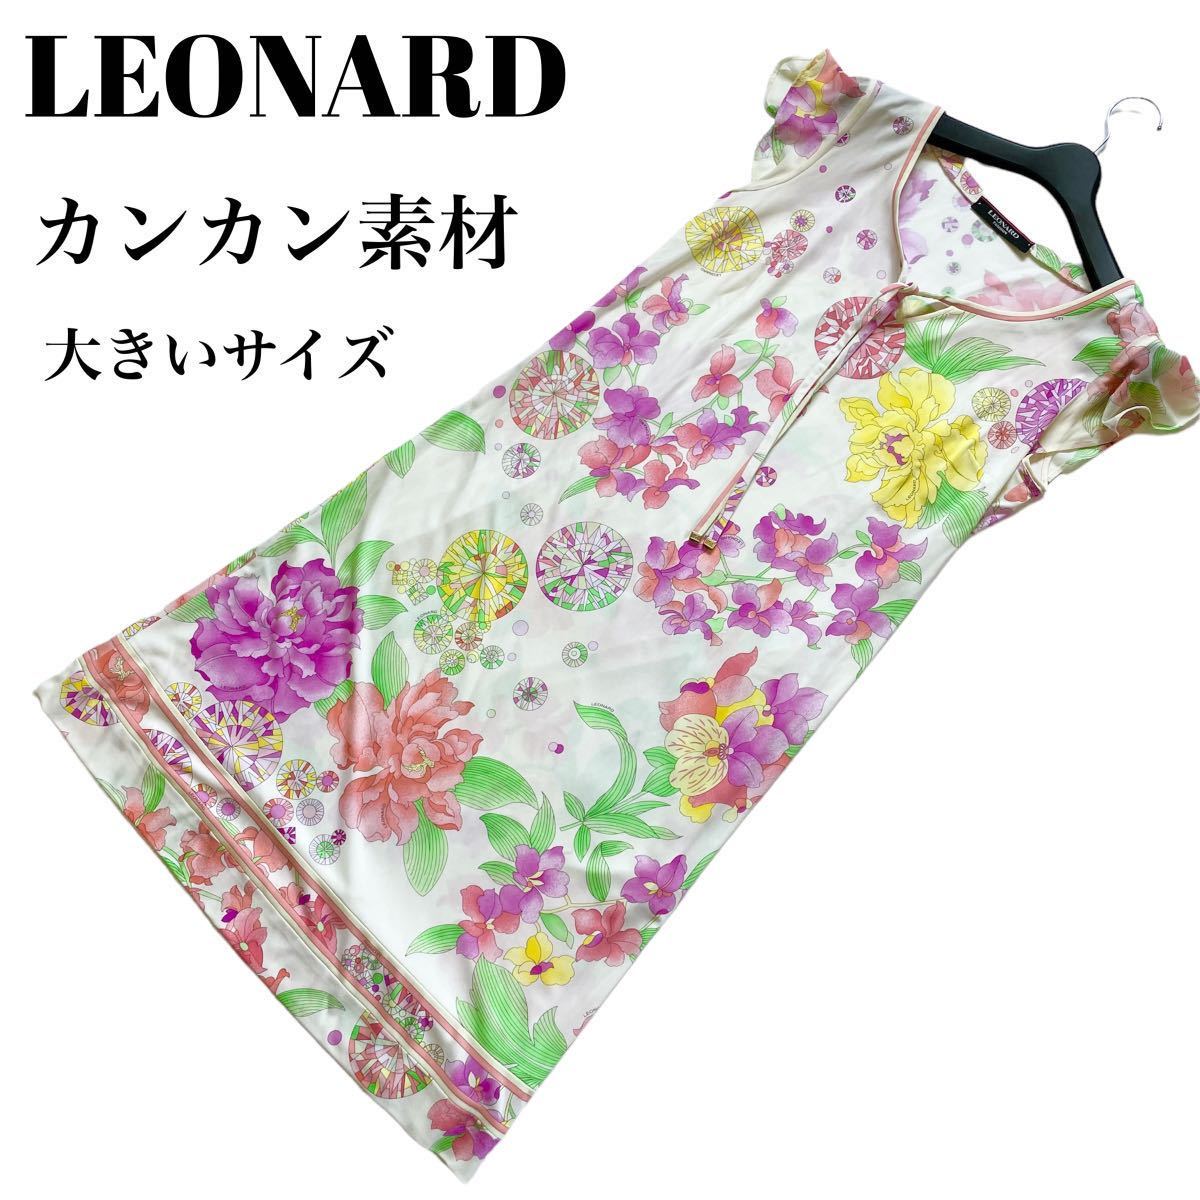 7434円 新作ウエア レオナール LEONARD ネイビー 絹 ボックススカートMサイズ